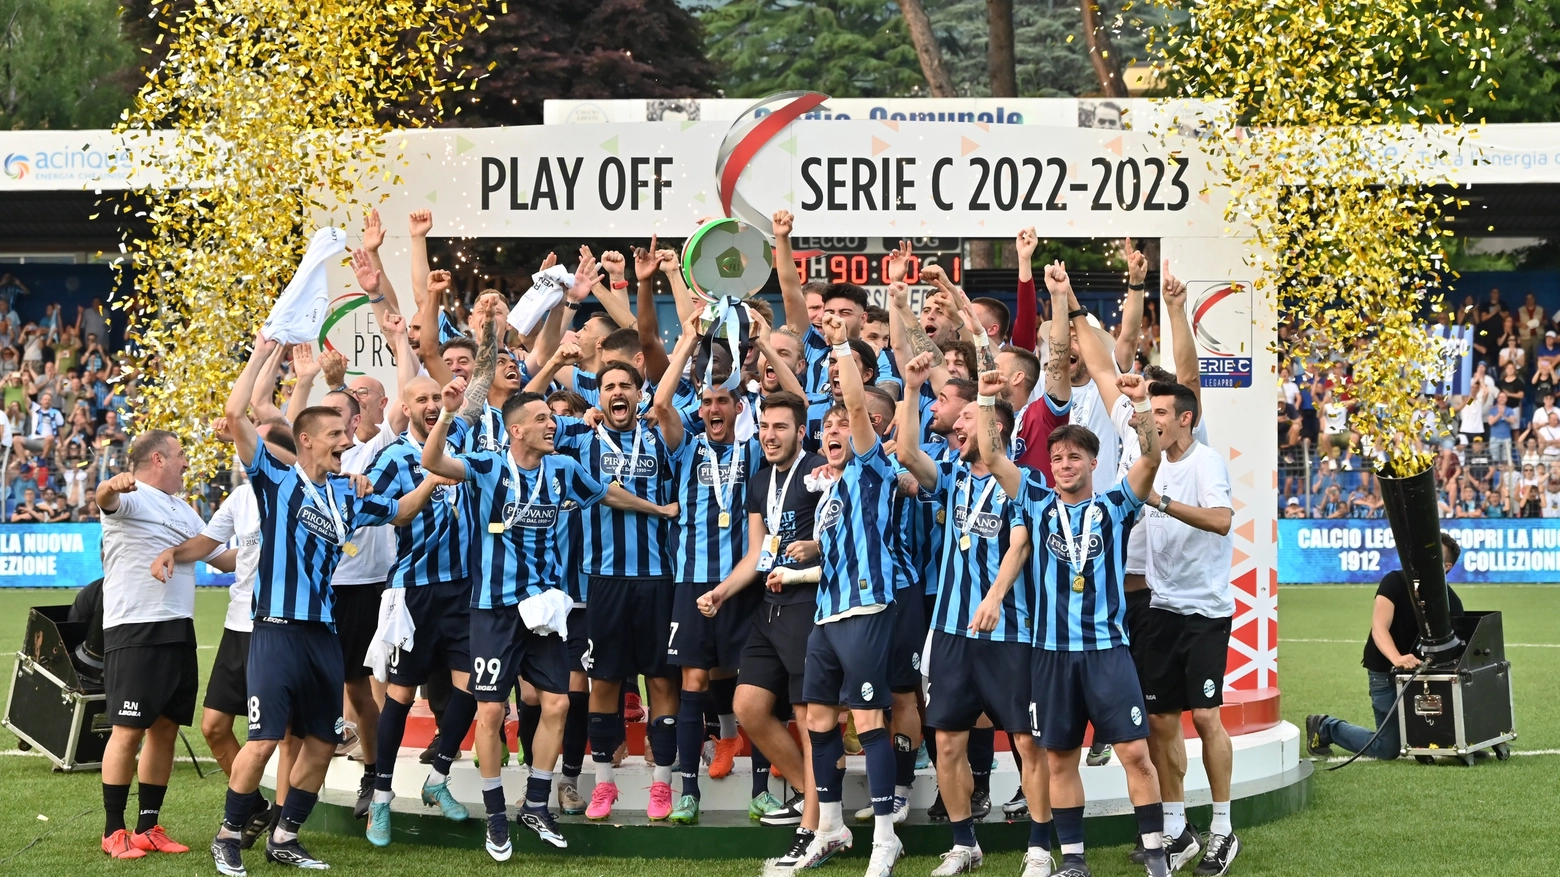 Il Lecco festeggia la promozione sul campo dopo la finale con il Foggia: era il 18 giugno scorso